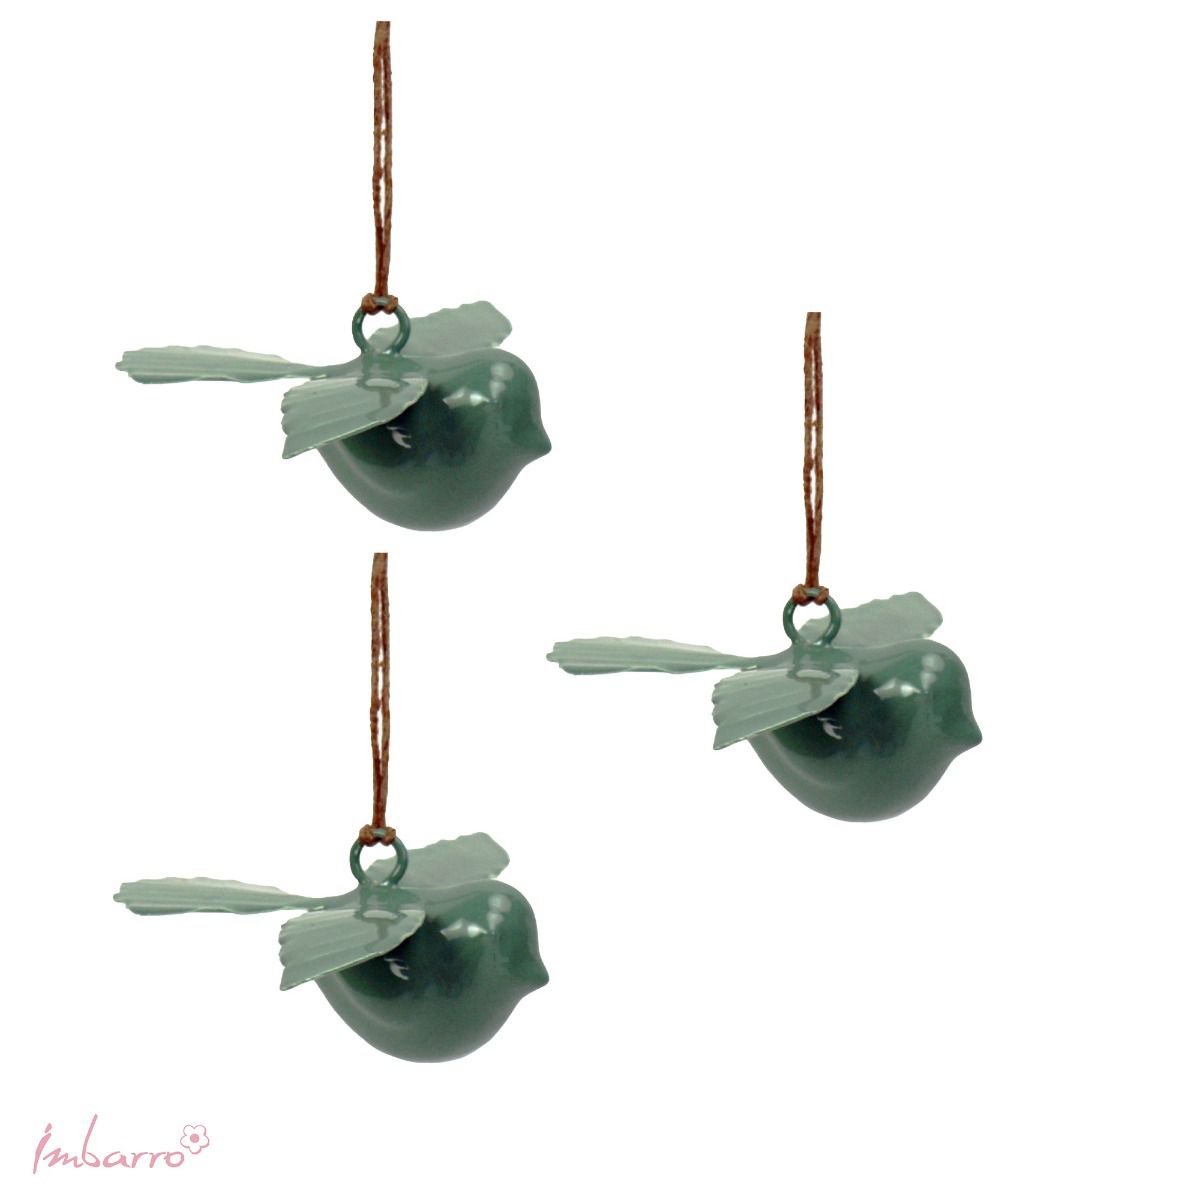 Imbarro - Decoratieve hanger 'Birdy Chica' (Set van 3, Lagoon)